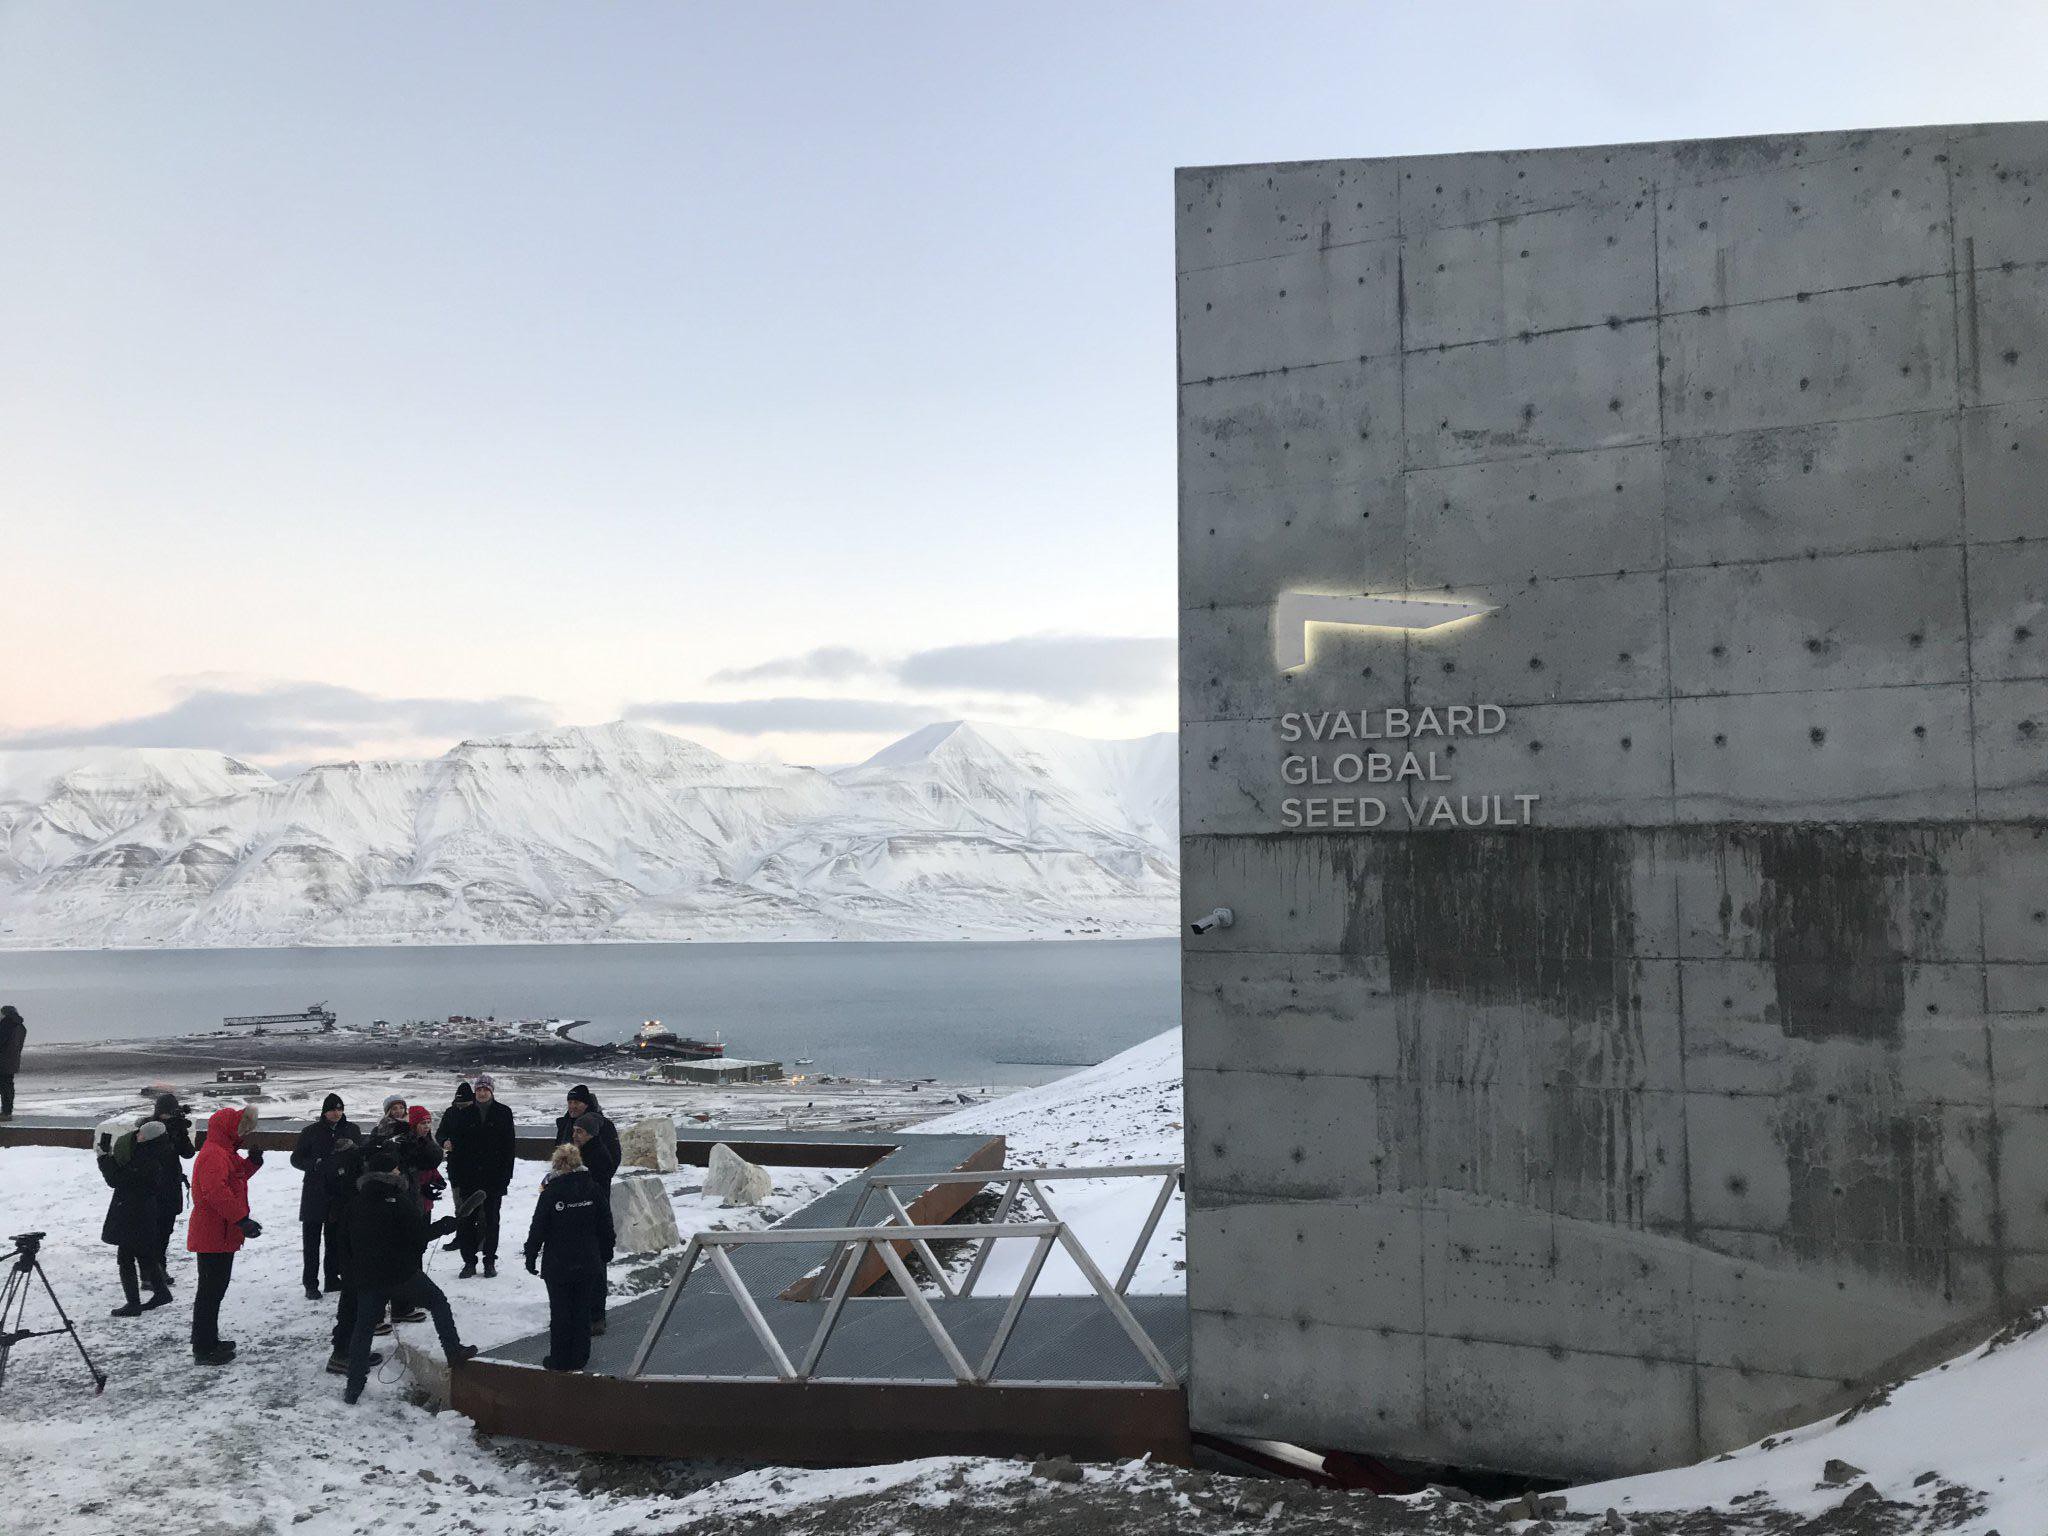 Latvia deposit 153 seed samples into the Svalbard Global Seed Vault